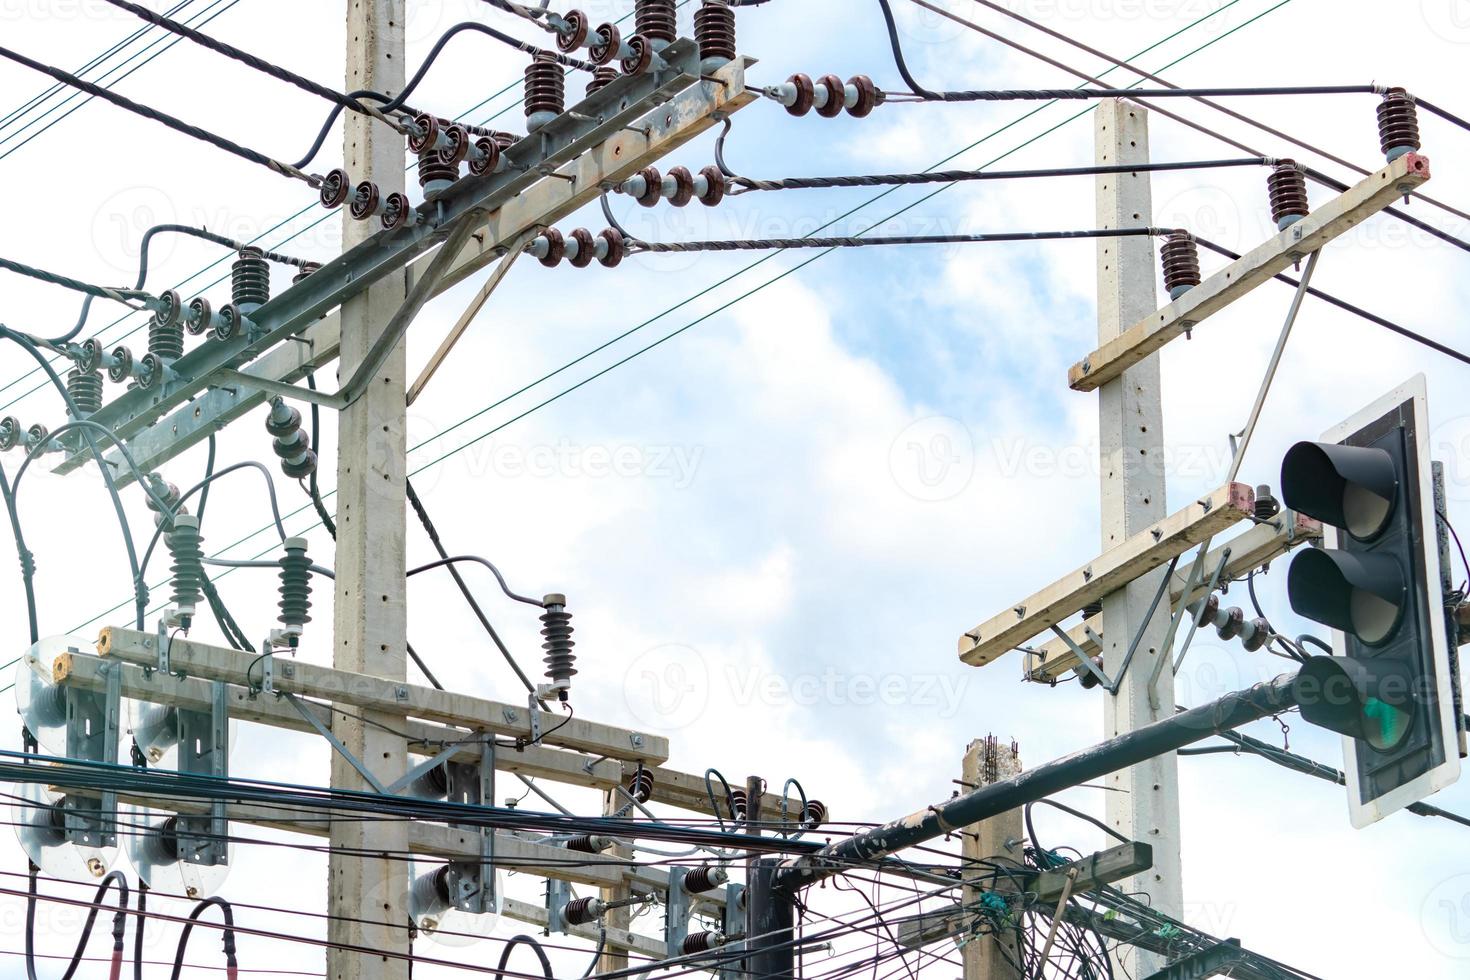 energia elétrica trifásica para transferência de energia pelas redes elétricas. energia elétrica para apoiar a indústria manufatureira. postes elétricos de alta tensão e linhas de arame contra céu azul e nuvens brancas. foto